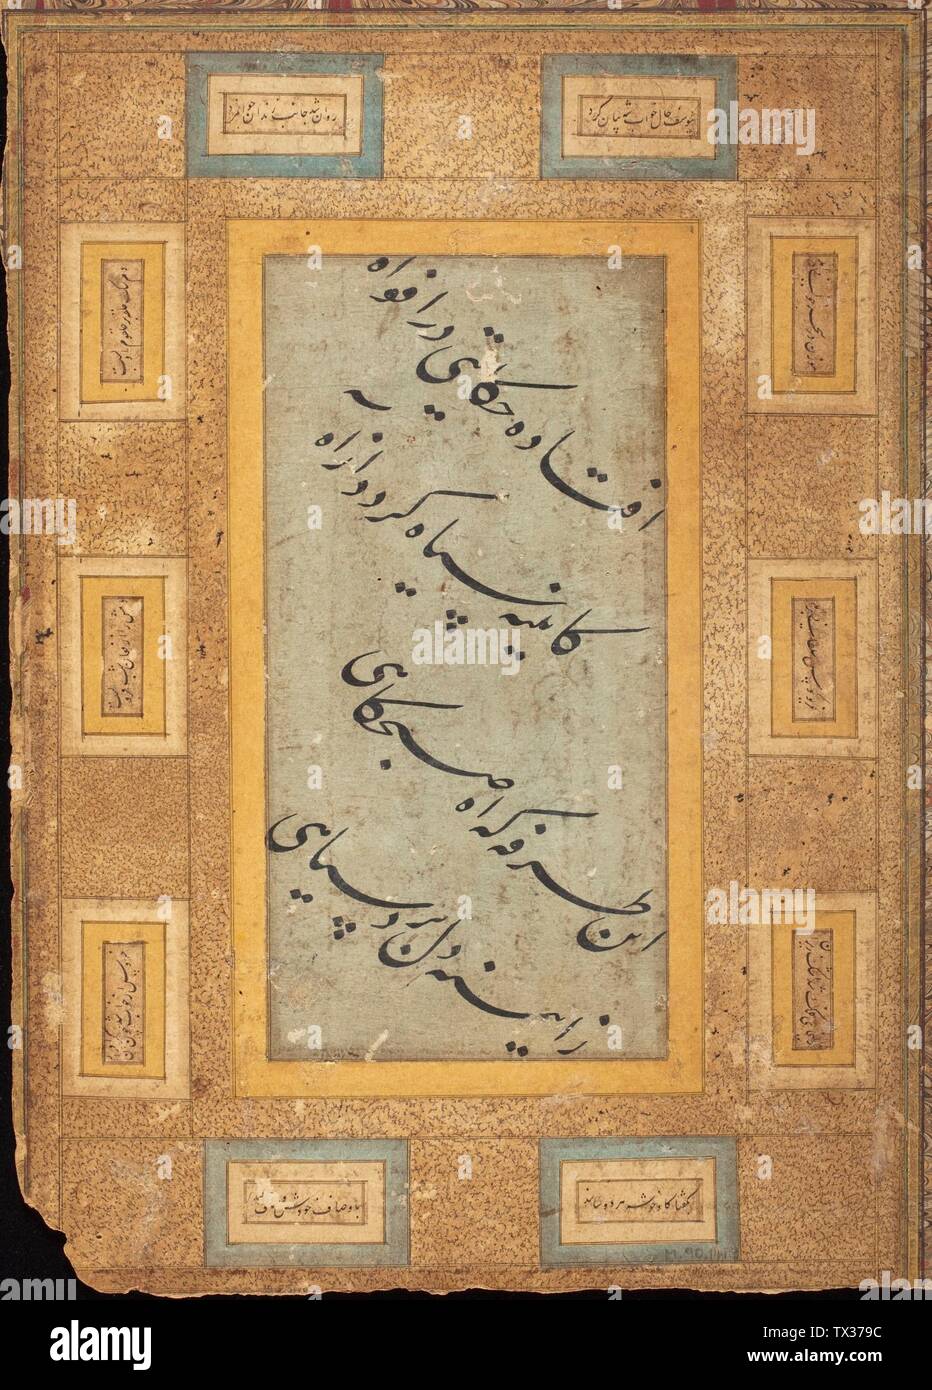 Asketische Frauen (recto), Seite der Kalligraphie (verso), Folio aus einem Album (Bild 2 von 4); Indien, Karnataka, Bijapur (recto); Iran oder Indien (verso), ca. 1600 (recto); Zeichnungen aus dem 17. Jahrhundert (verso); Opake Aquarelle Wasserfarbe, Gold und Tinte auf dem Papier Bequest von Edwin (südostasiatische Kunst, 3.141.M.) CA. 1600 Datum QS:P571,+1600-00-00T00:00:00Z/9,P1480,Q5727902 (recto); 17. Jahrhundert (verso); Stockfoto